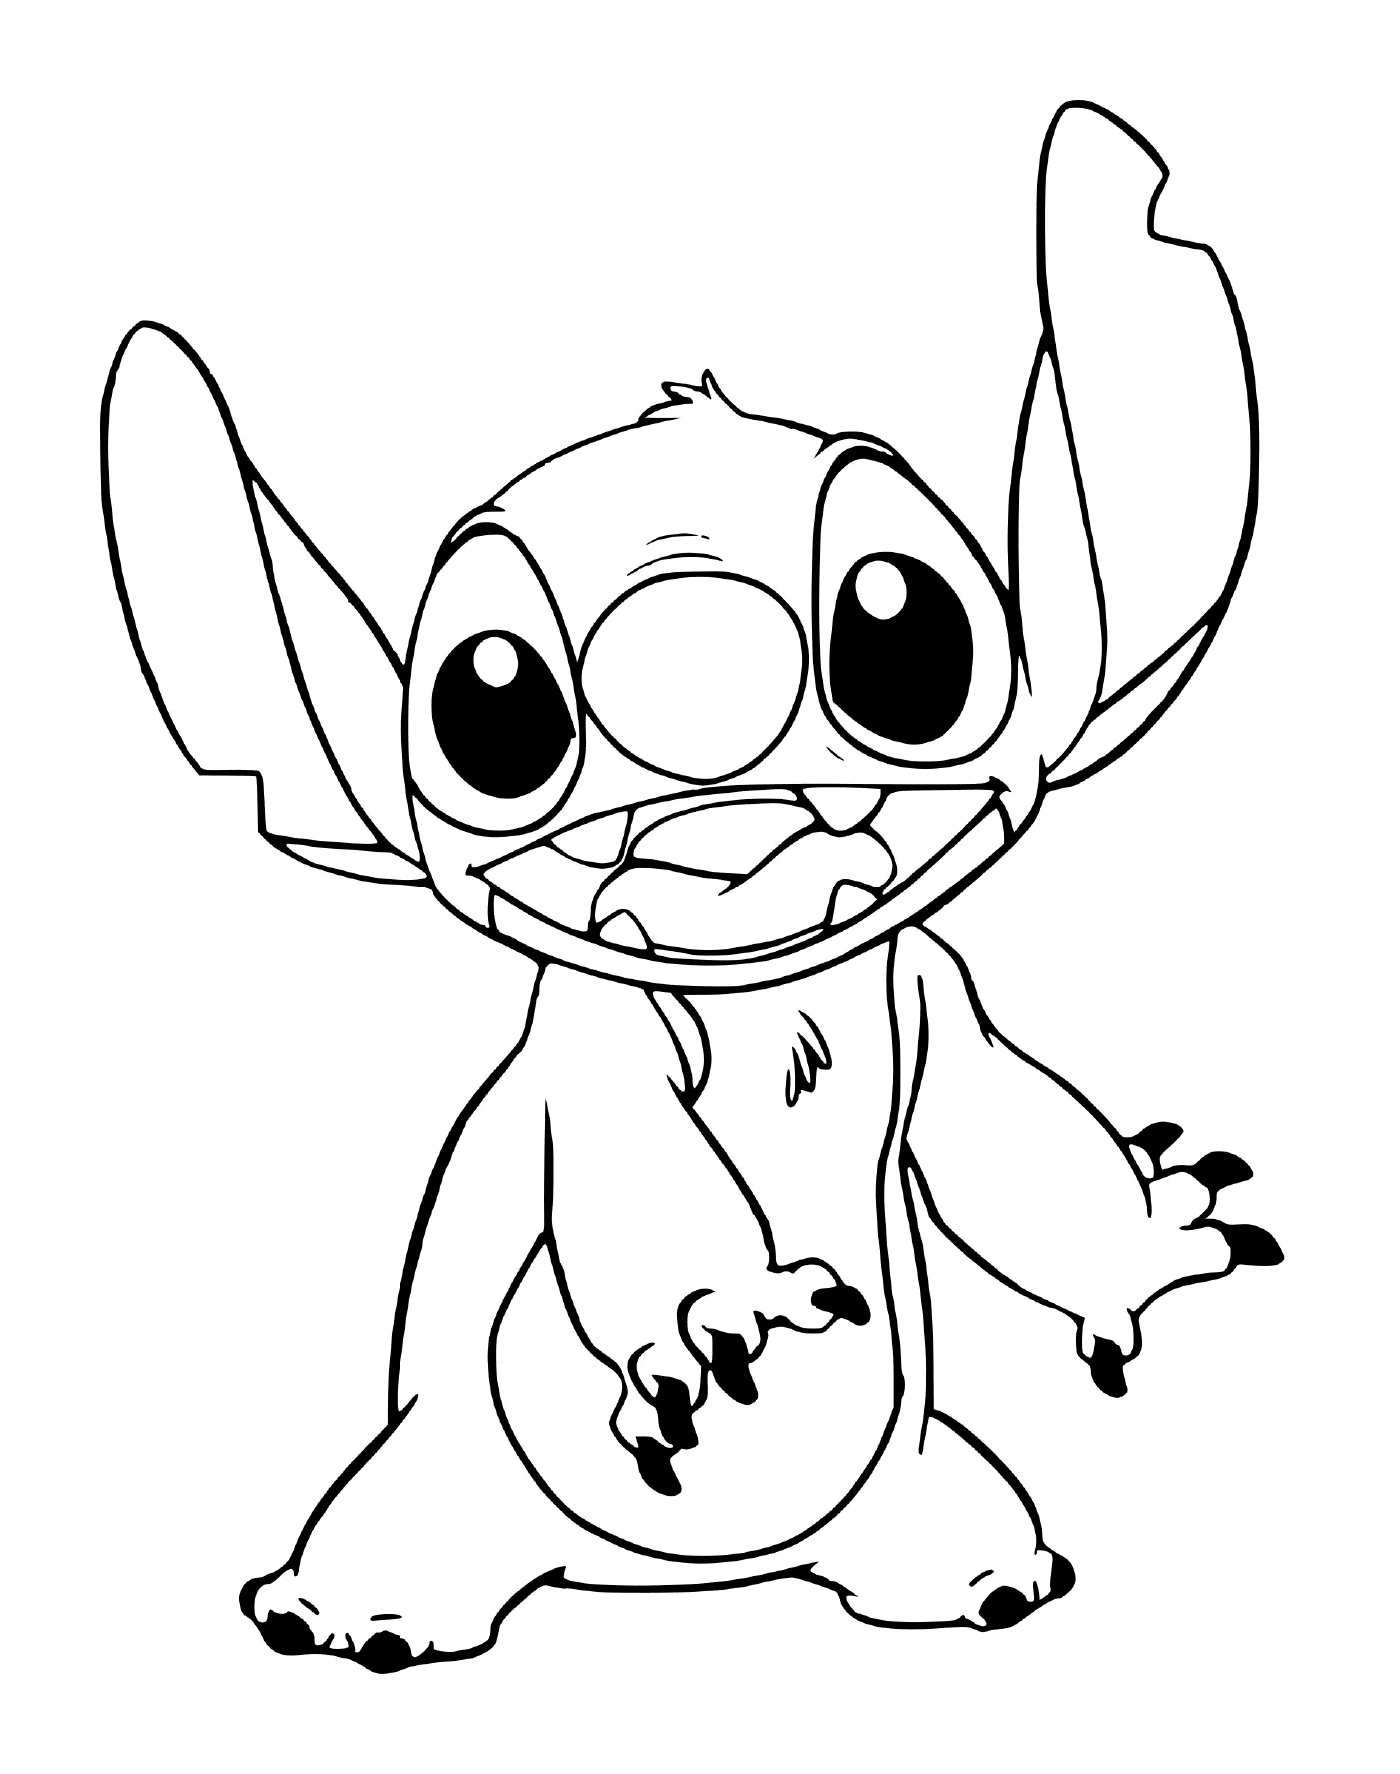  Imagem de Stitch em desenho 